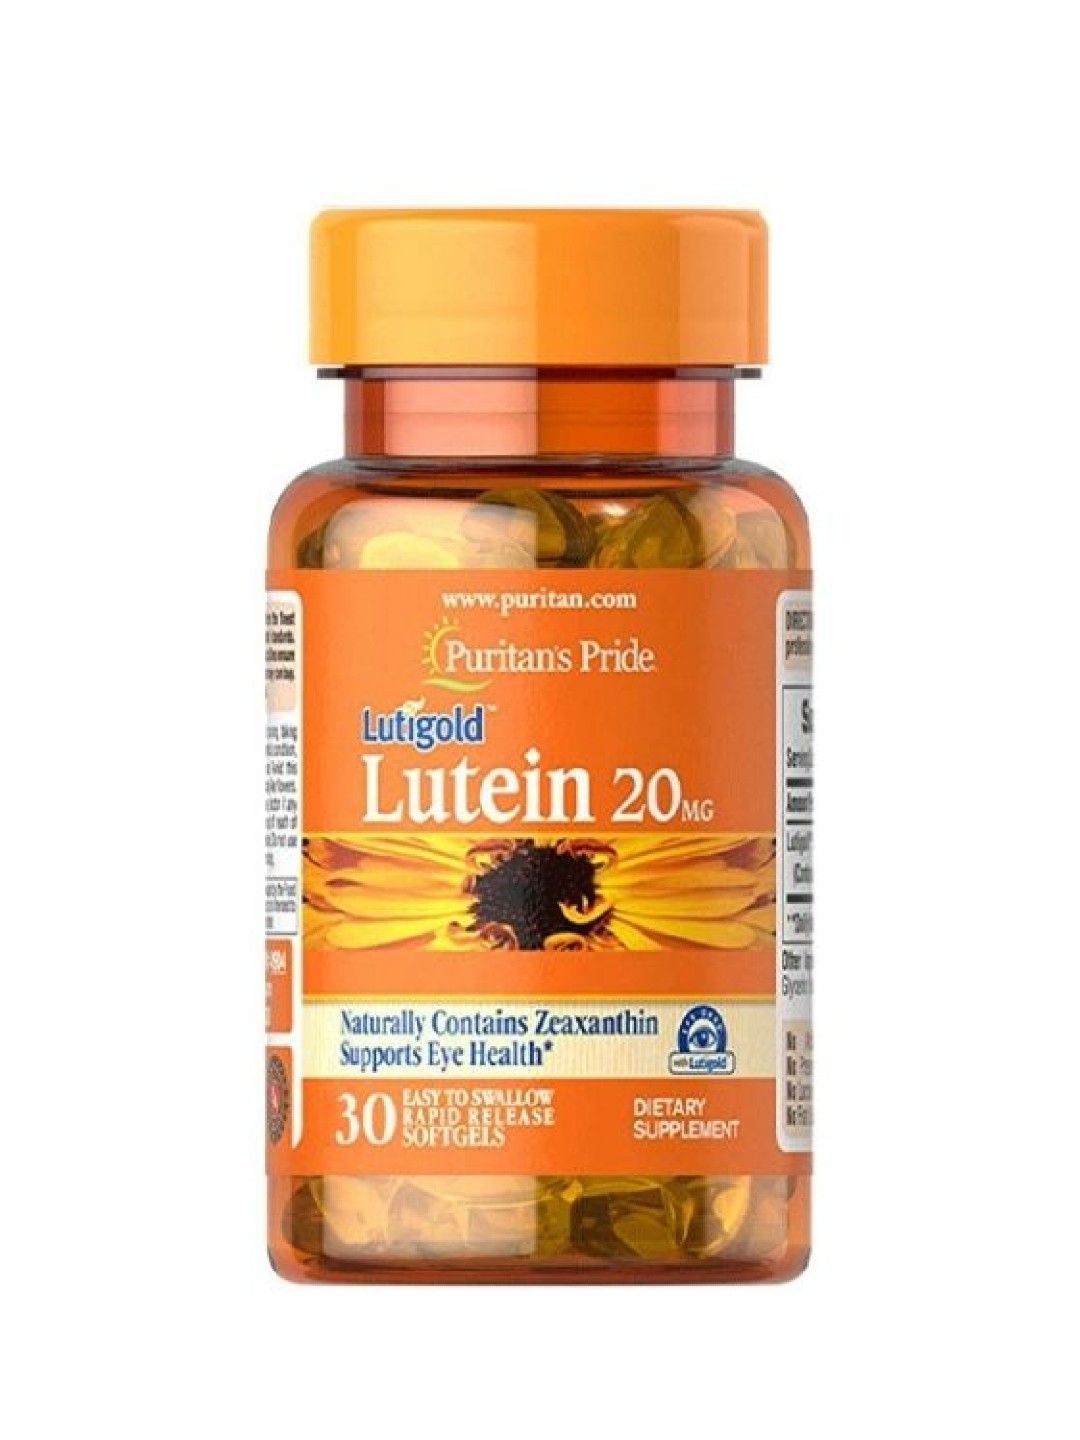 Puritan's Pride Lutein 20 mg (30 softgels)